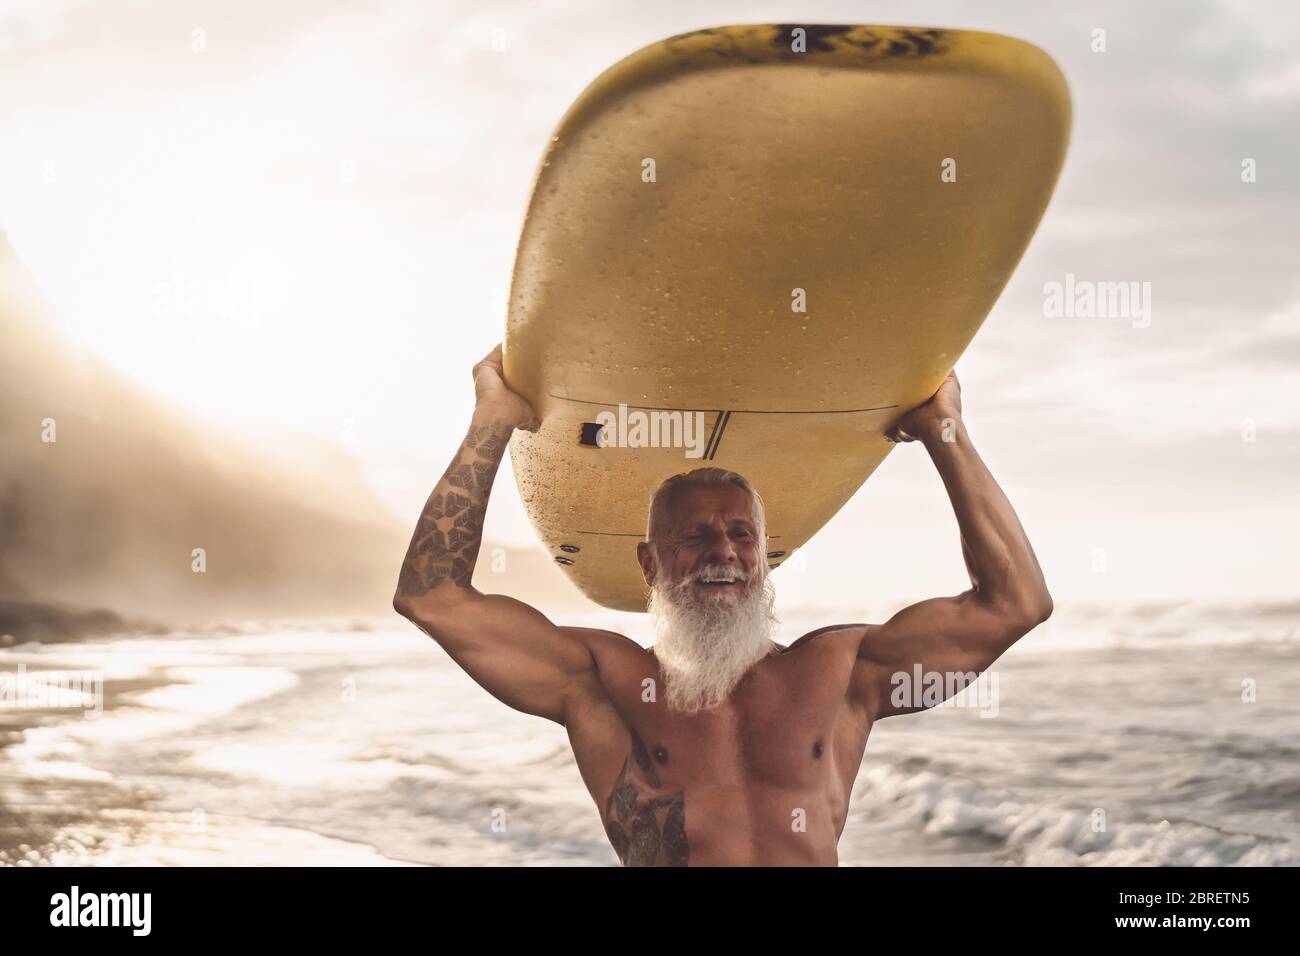 Bonne tenue pour les personnes âgées qui s'amusent à surfer au coucher du soleil - Sporty barbu homme s'entraîner avec planche de surf sur la plage Banque D'Images